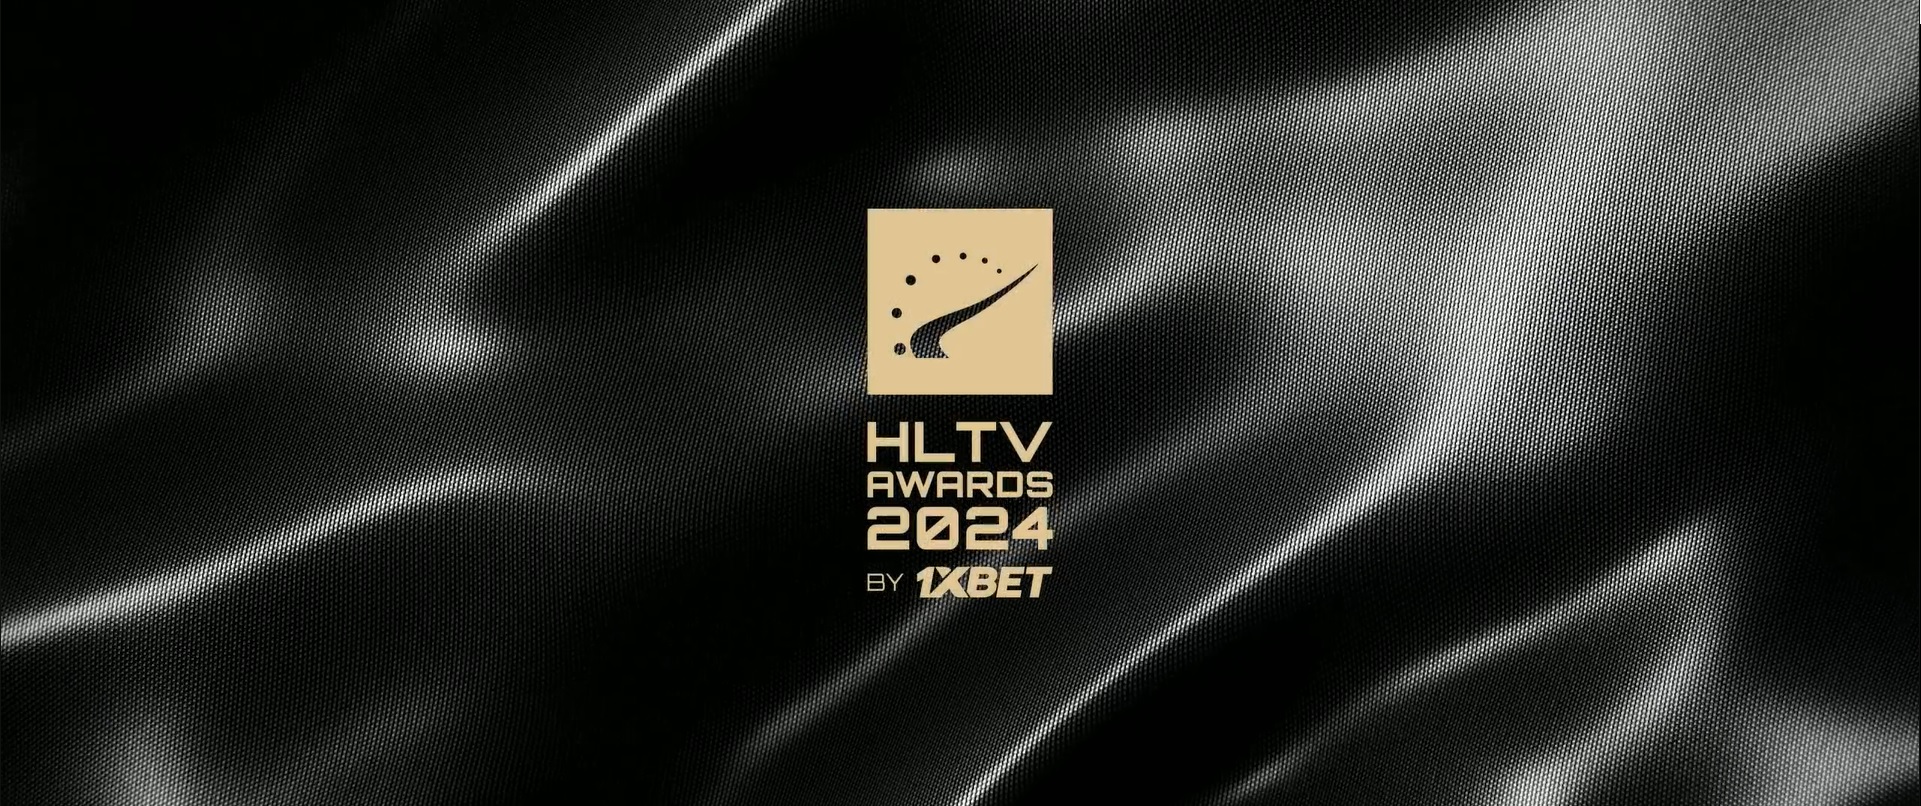 HLTV-Awards-2024-Belgrade-Serbia-24-1